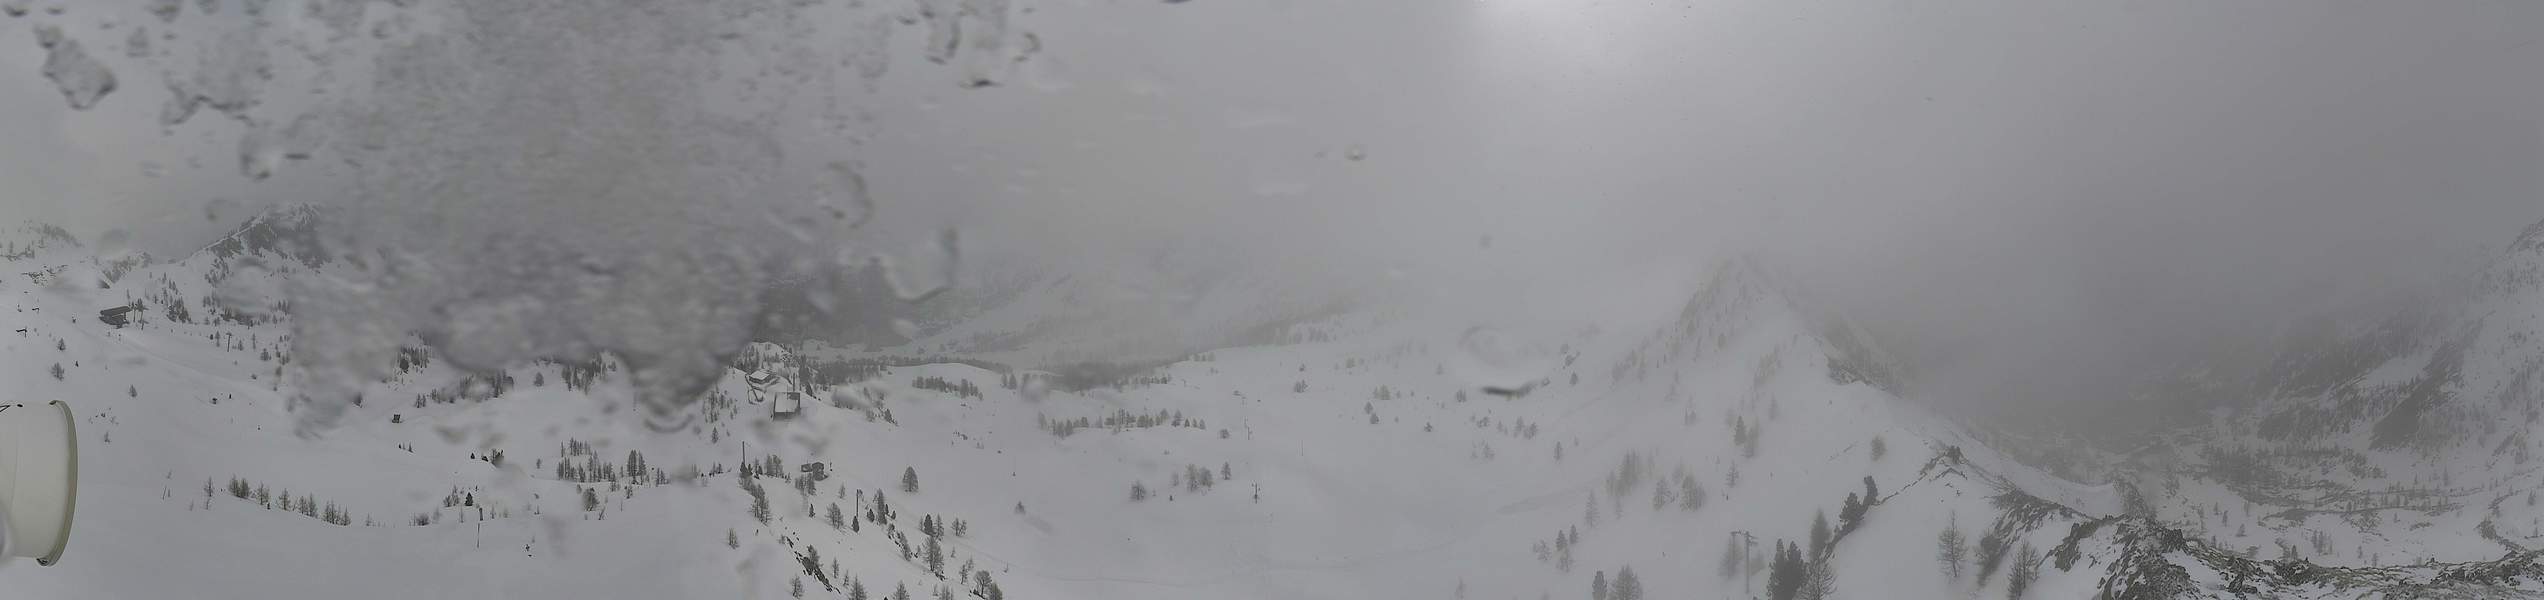 Webcam panoramique du snowpark/boardercross d'Isola 2000